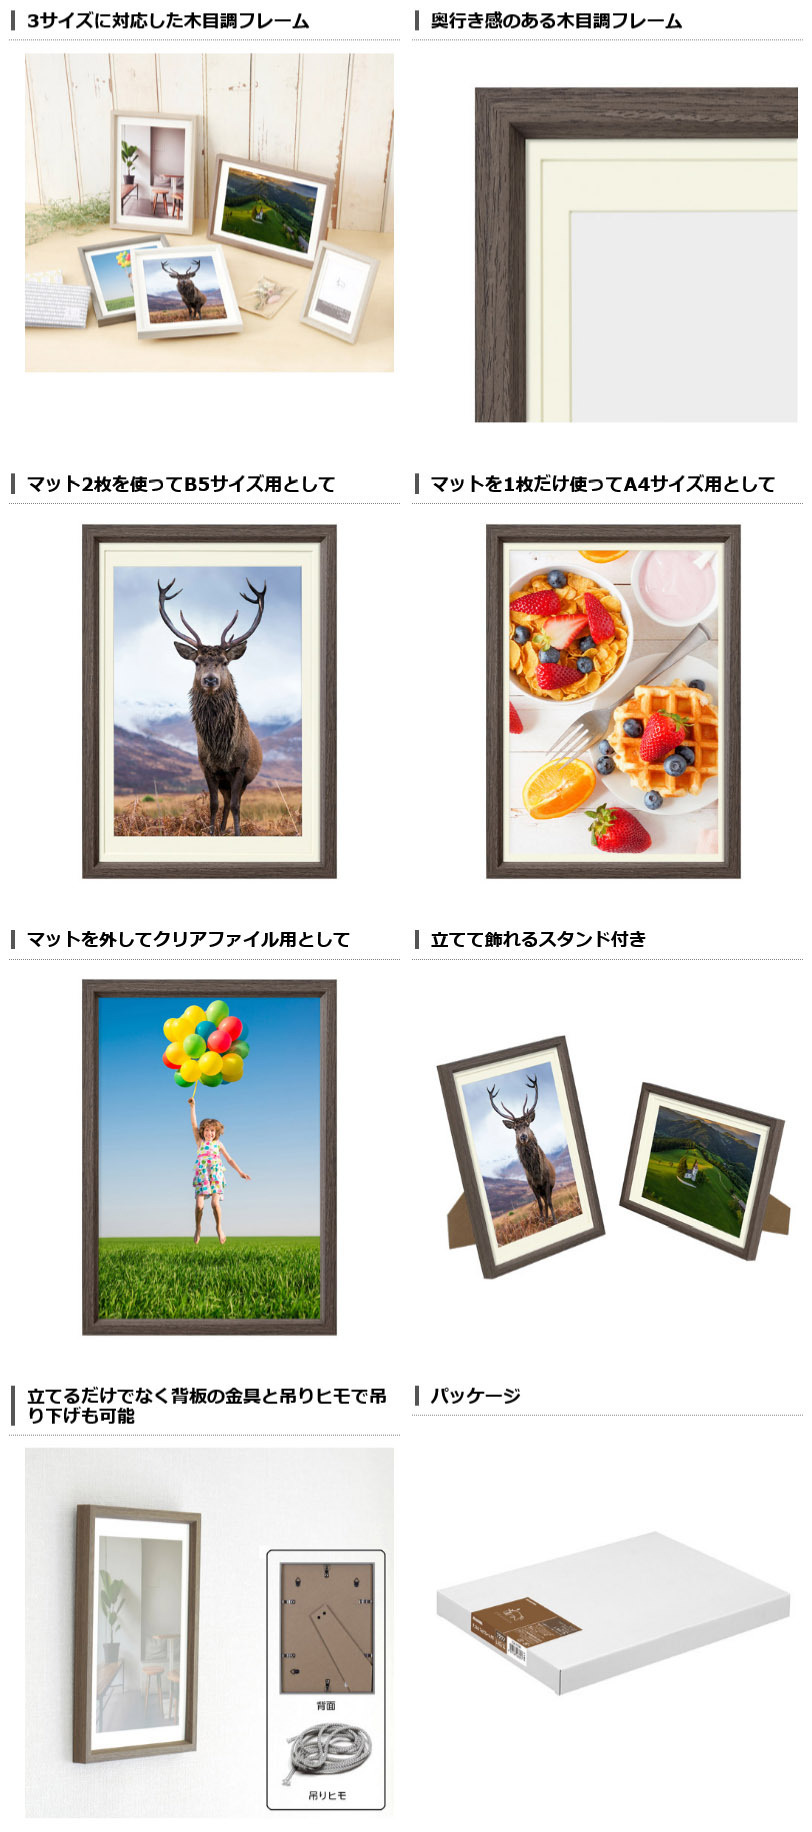 B5 サイズの写真やクリアファイルが飾れる Chululu チュルル フォトフレーム P01 4色が新発売 ハクバ写真産業株式会社のプレスリリース